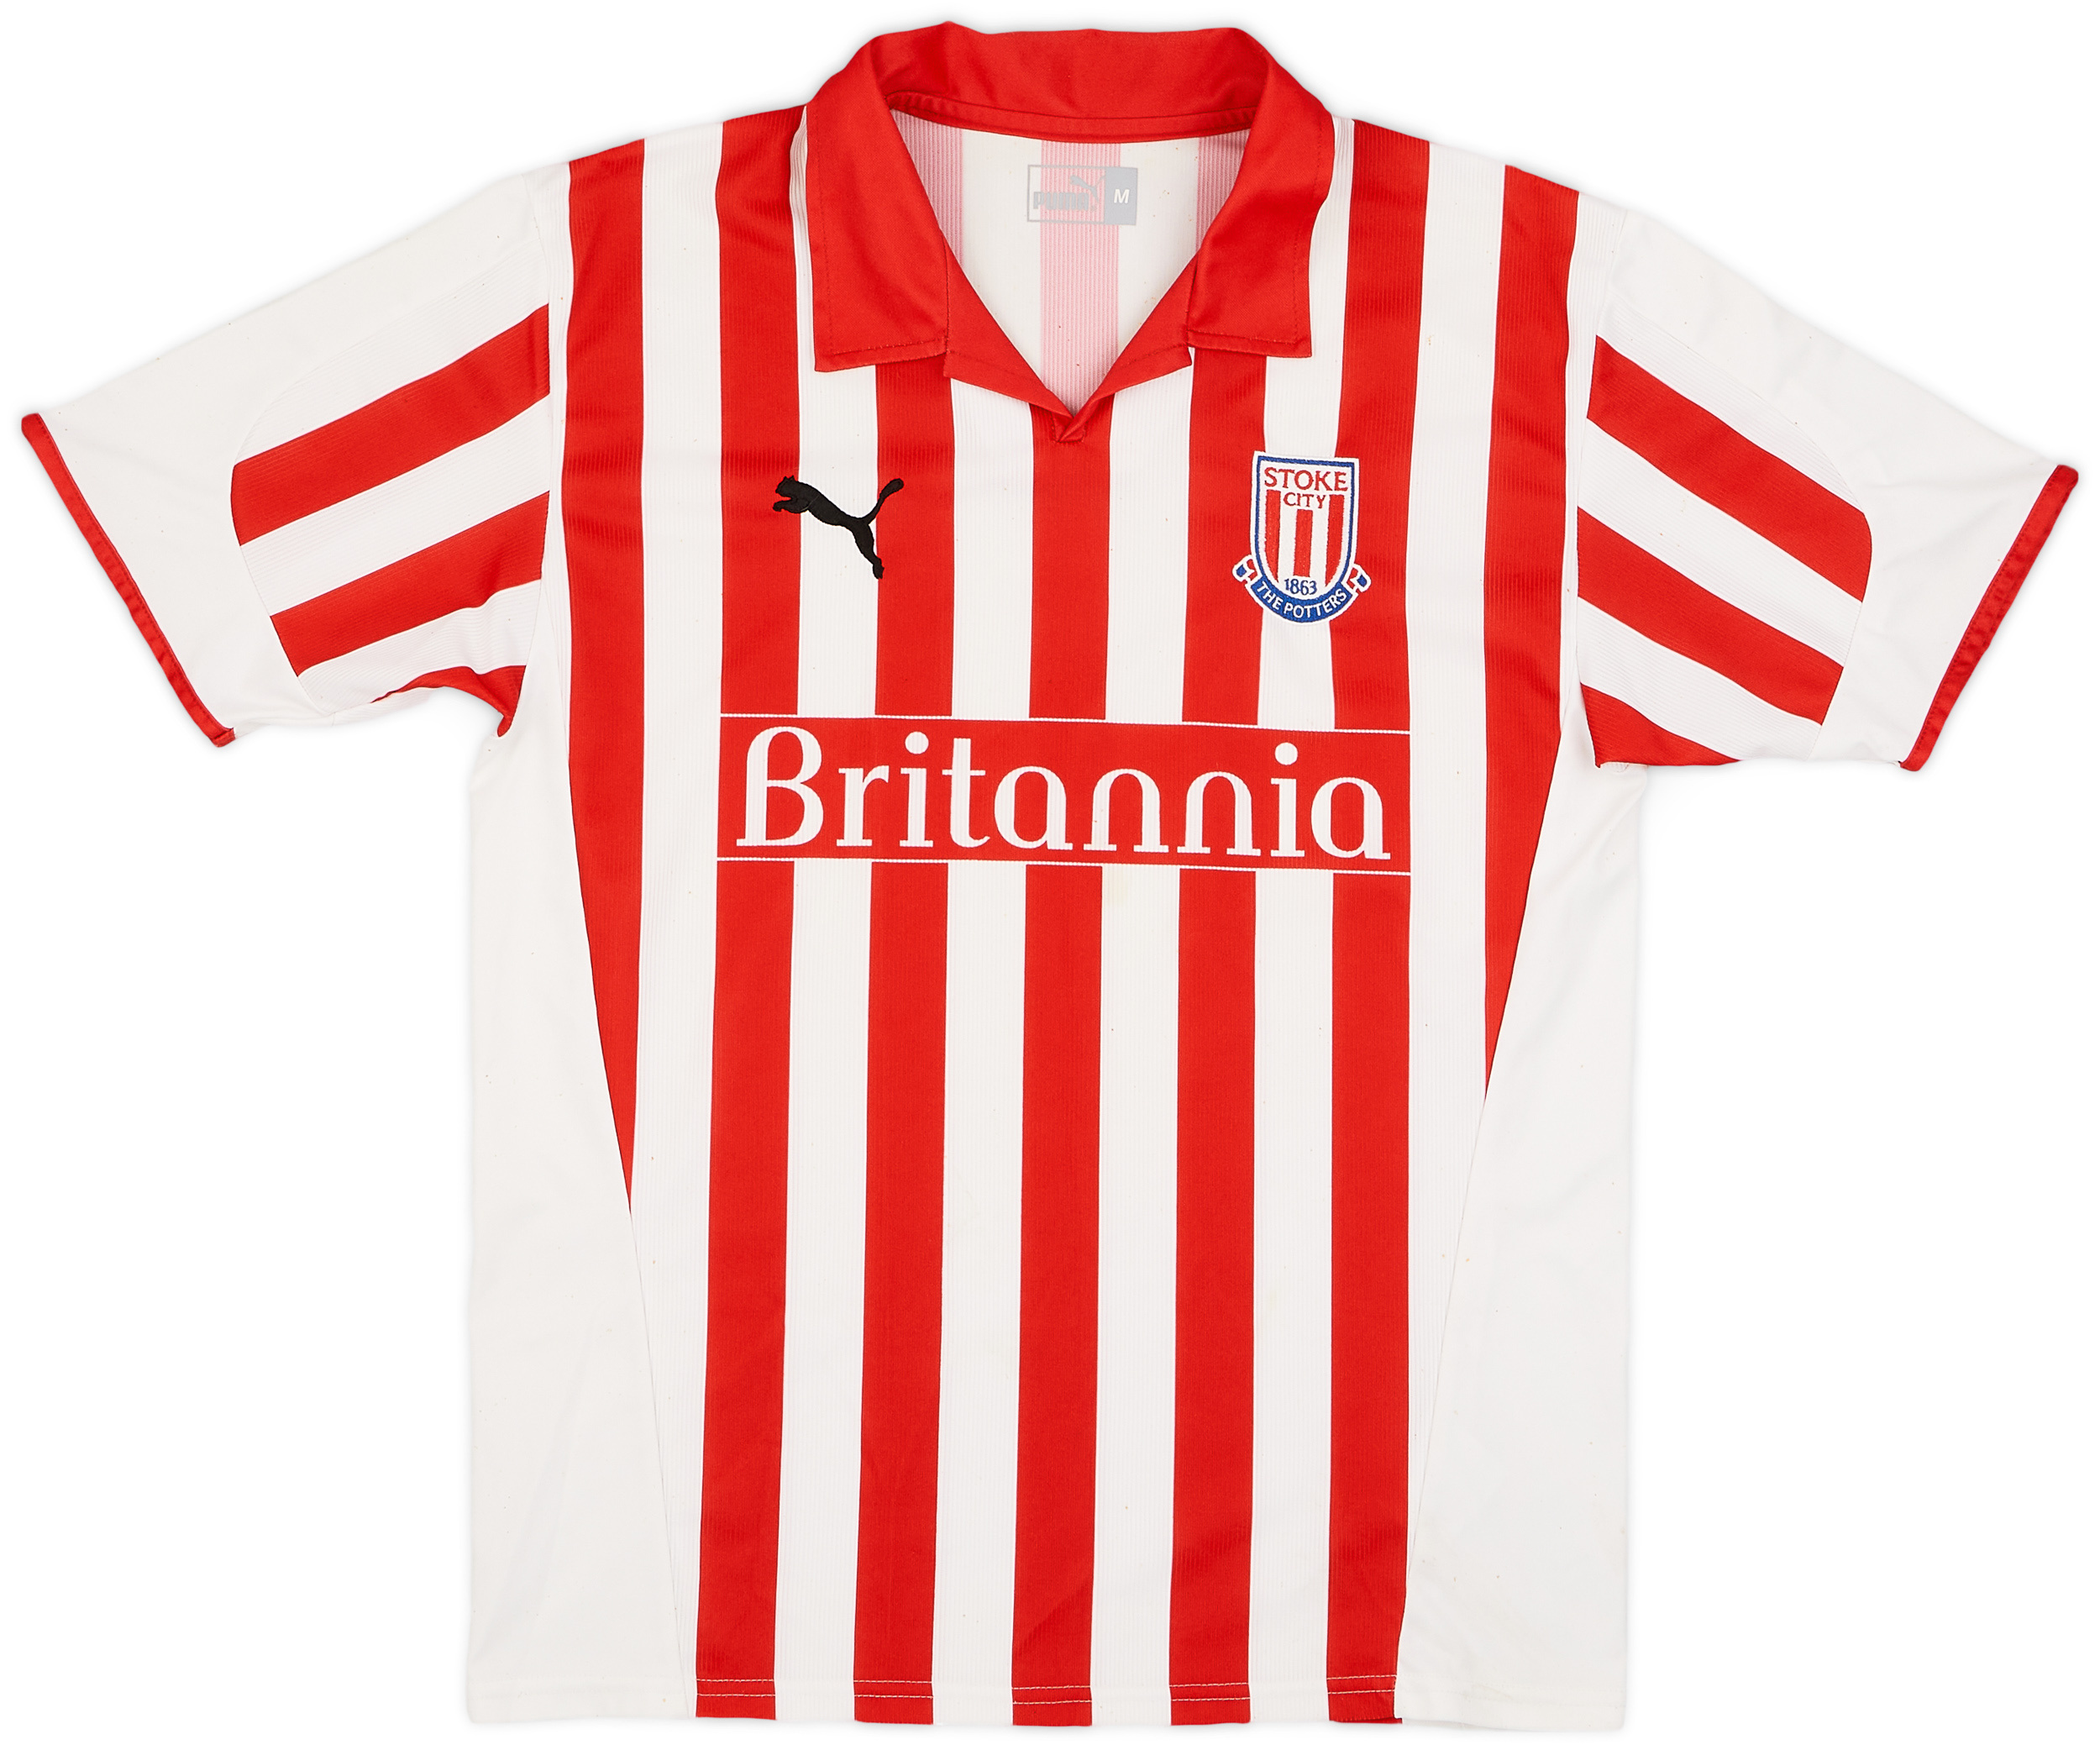 Stoke City  home shirt (Original)